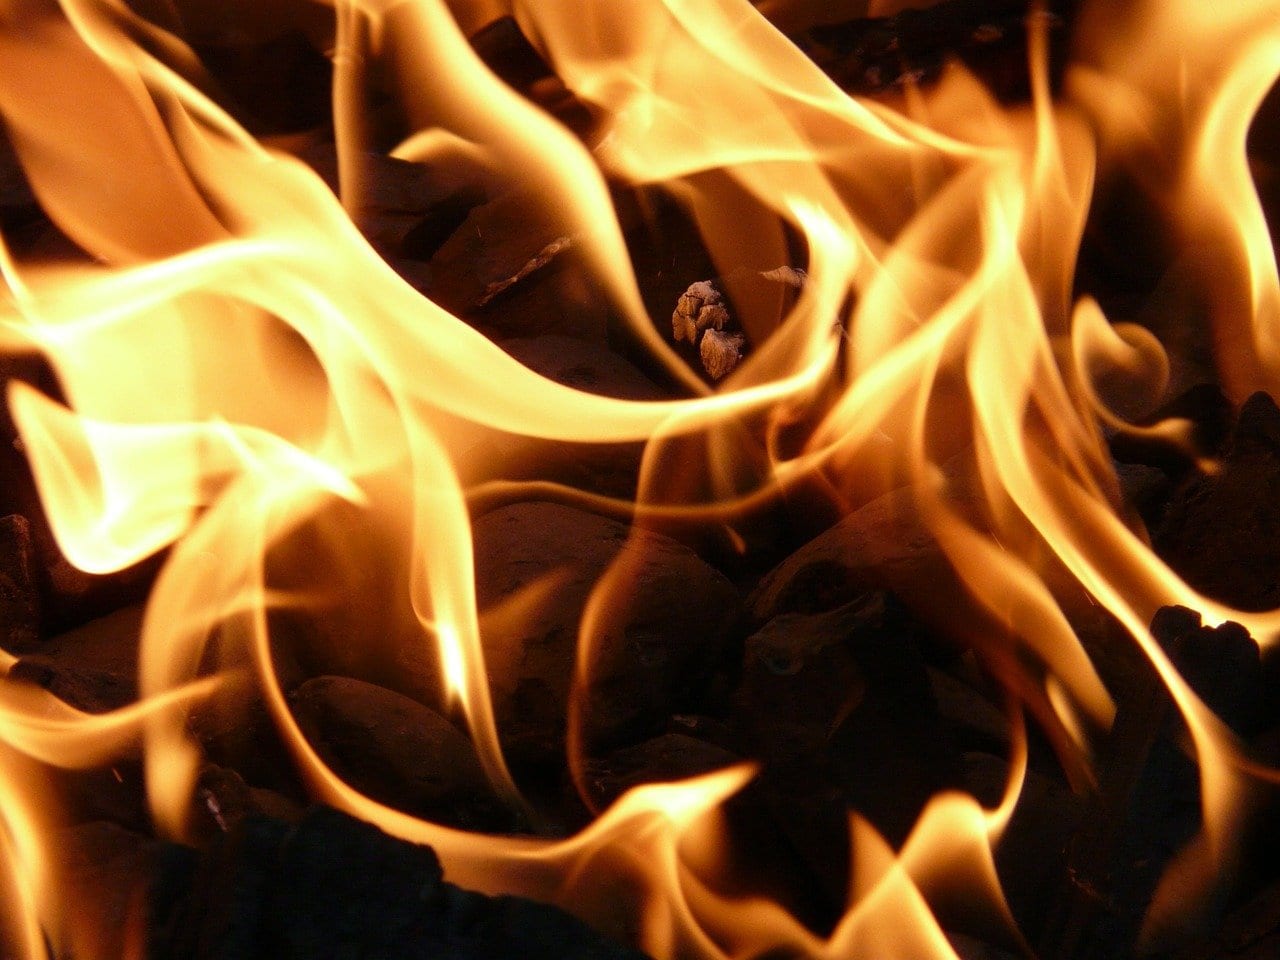 Труп мужчины обнаружили в сгоревшем автомобиле в Архангельской области